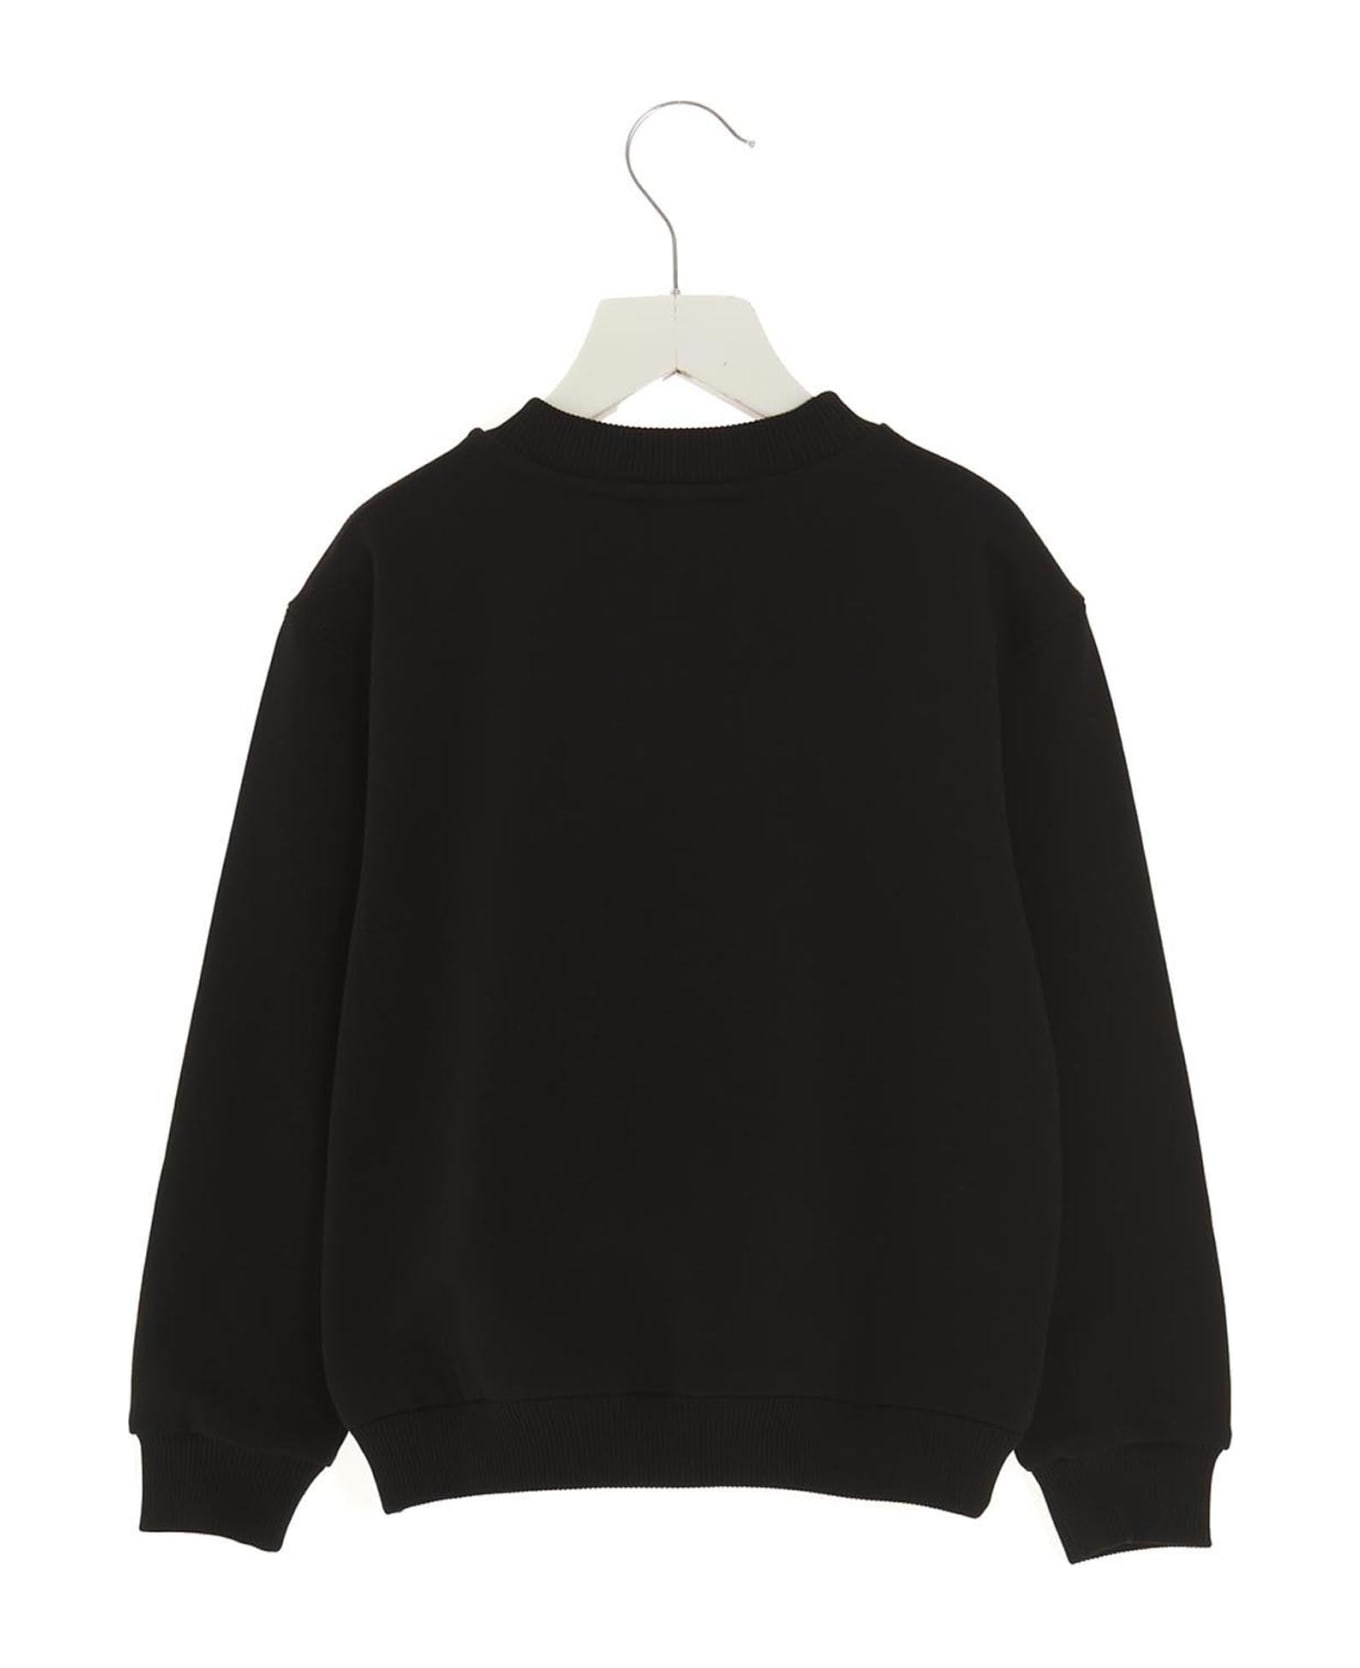 Dolce & Gabbana 'essential' Sweatshirt - White/Black